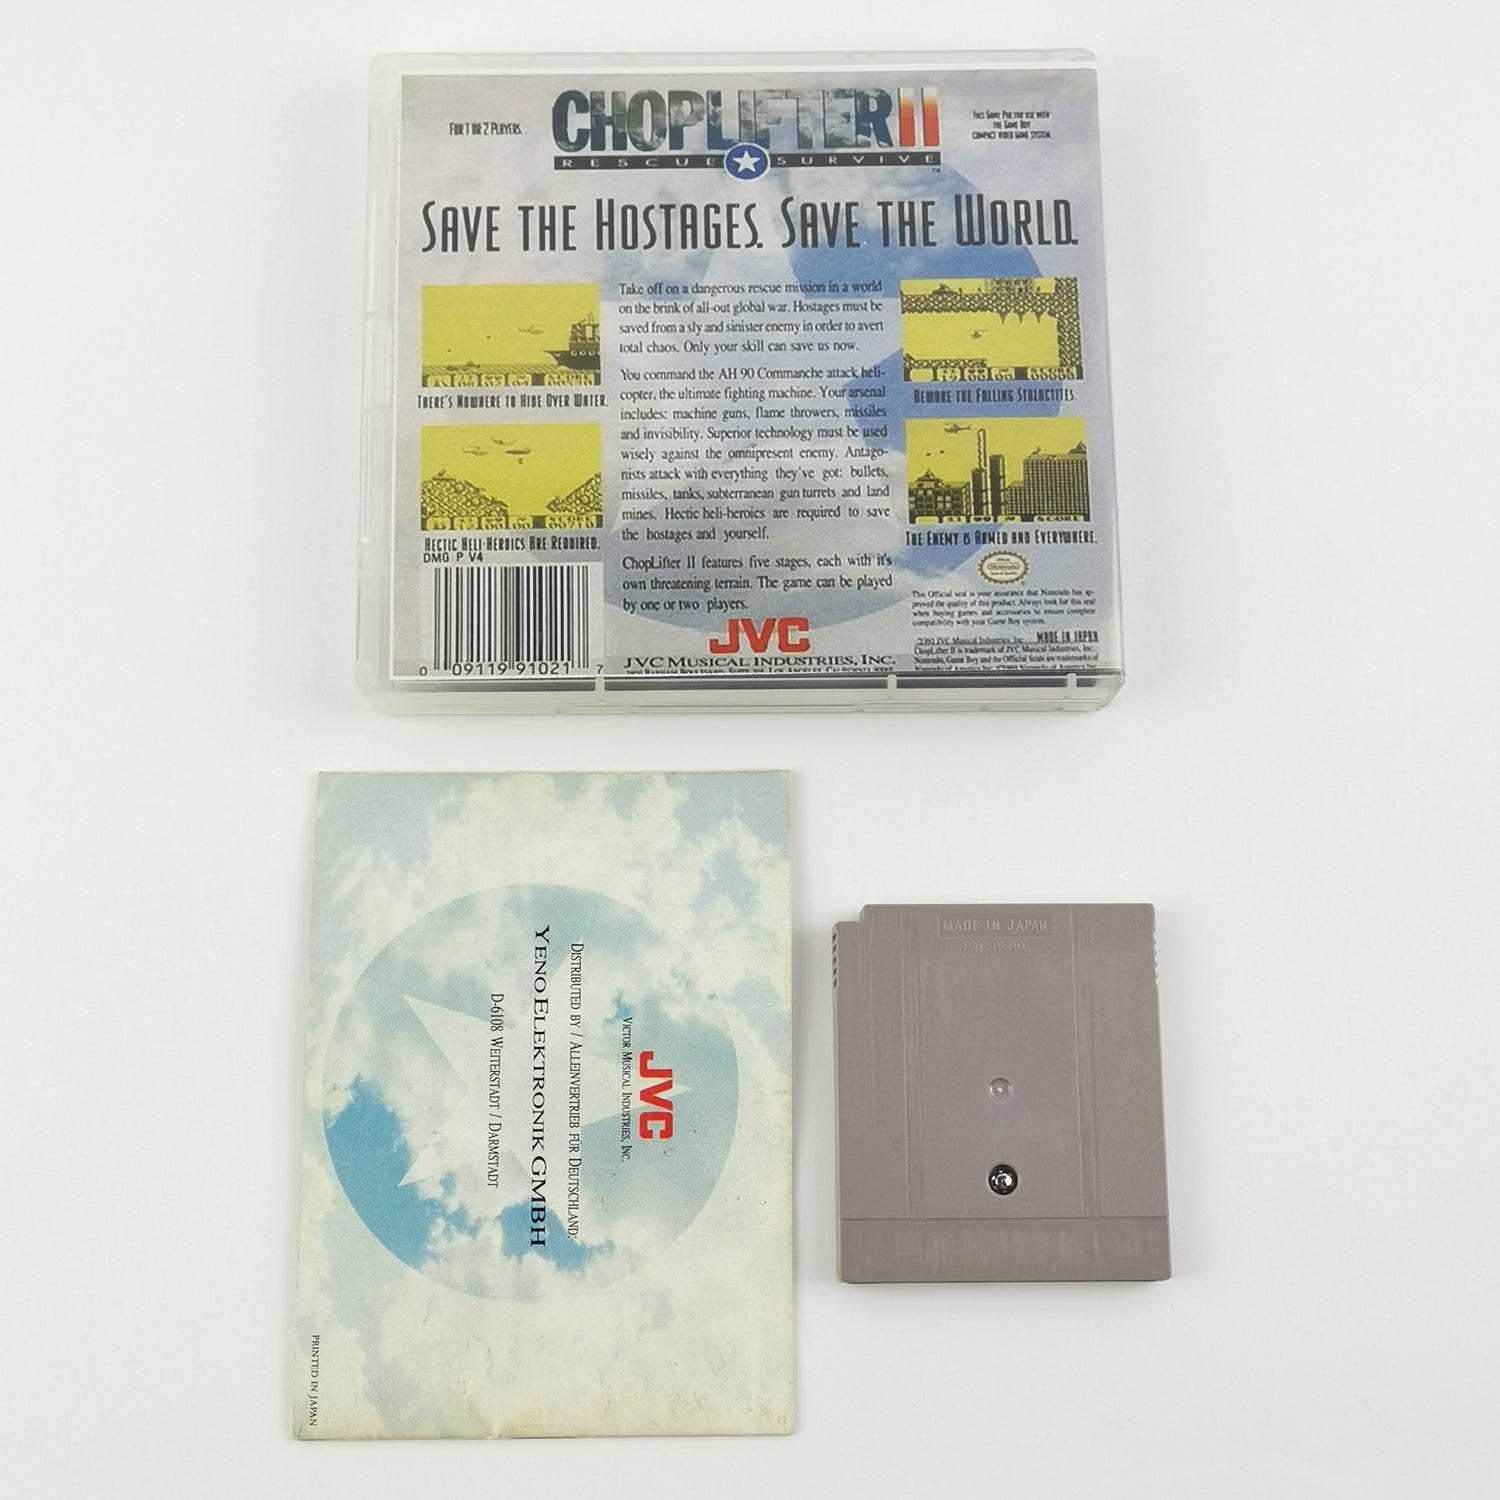 Nintendo Game Boy Classic Game: Choplifter II 2 - Module & Instructions PAL NOE